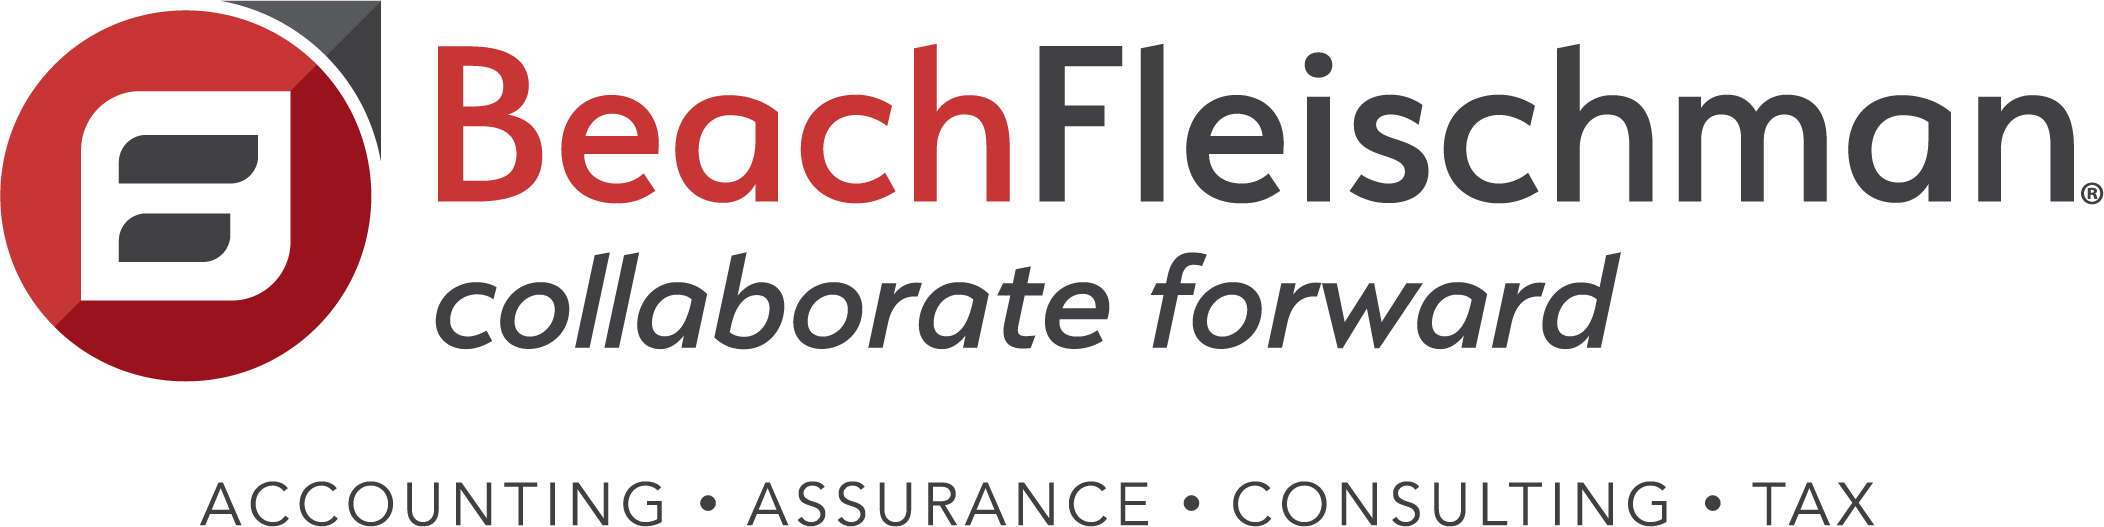 Beachfleischman logo